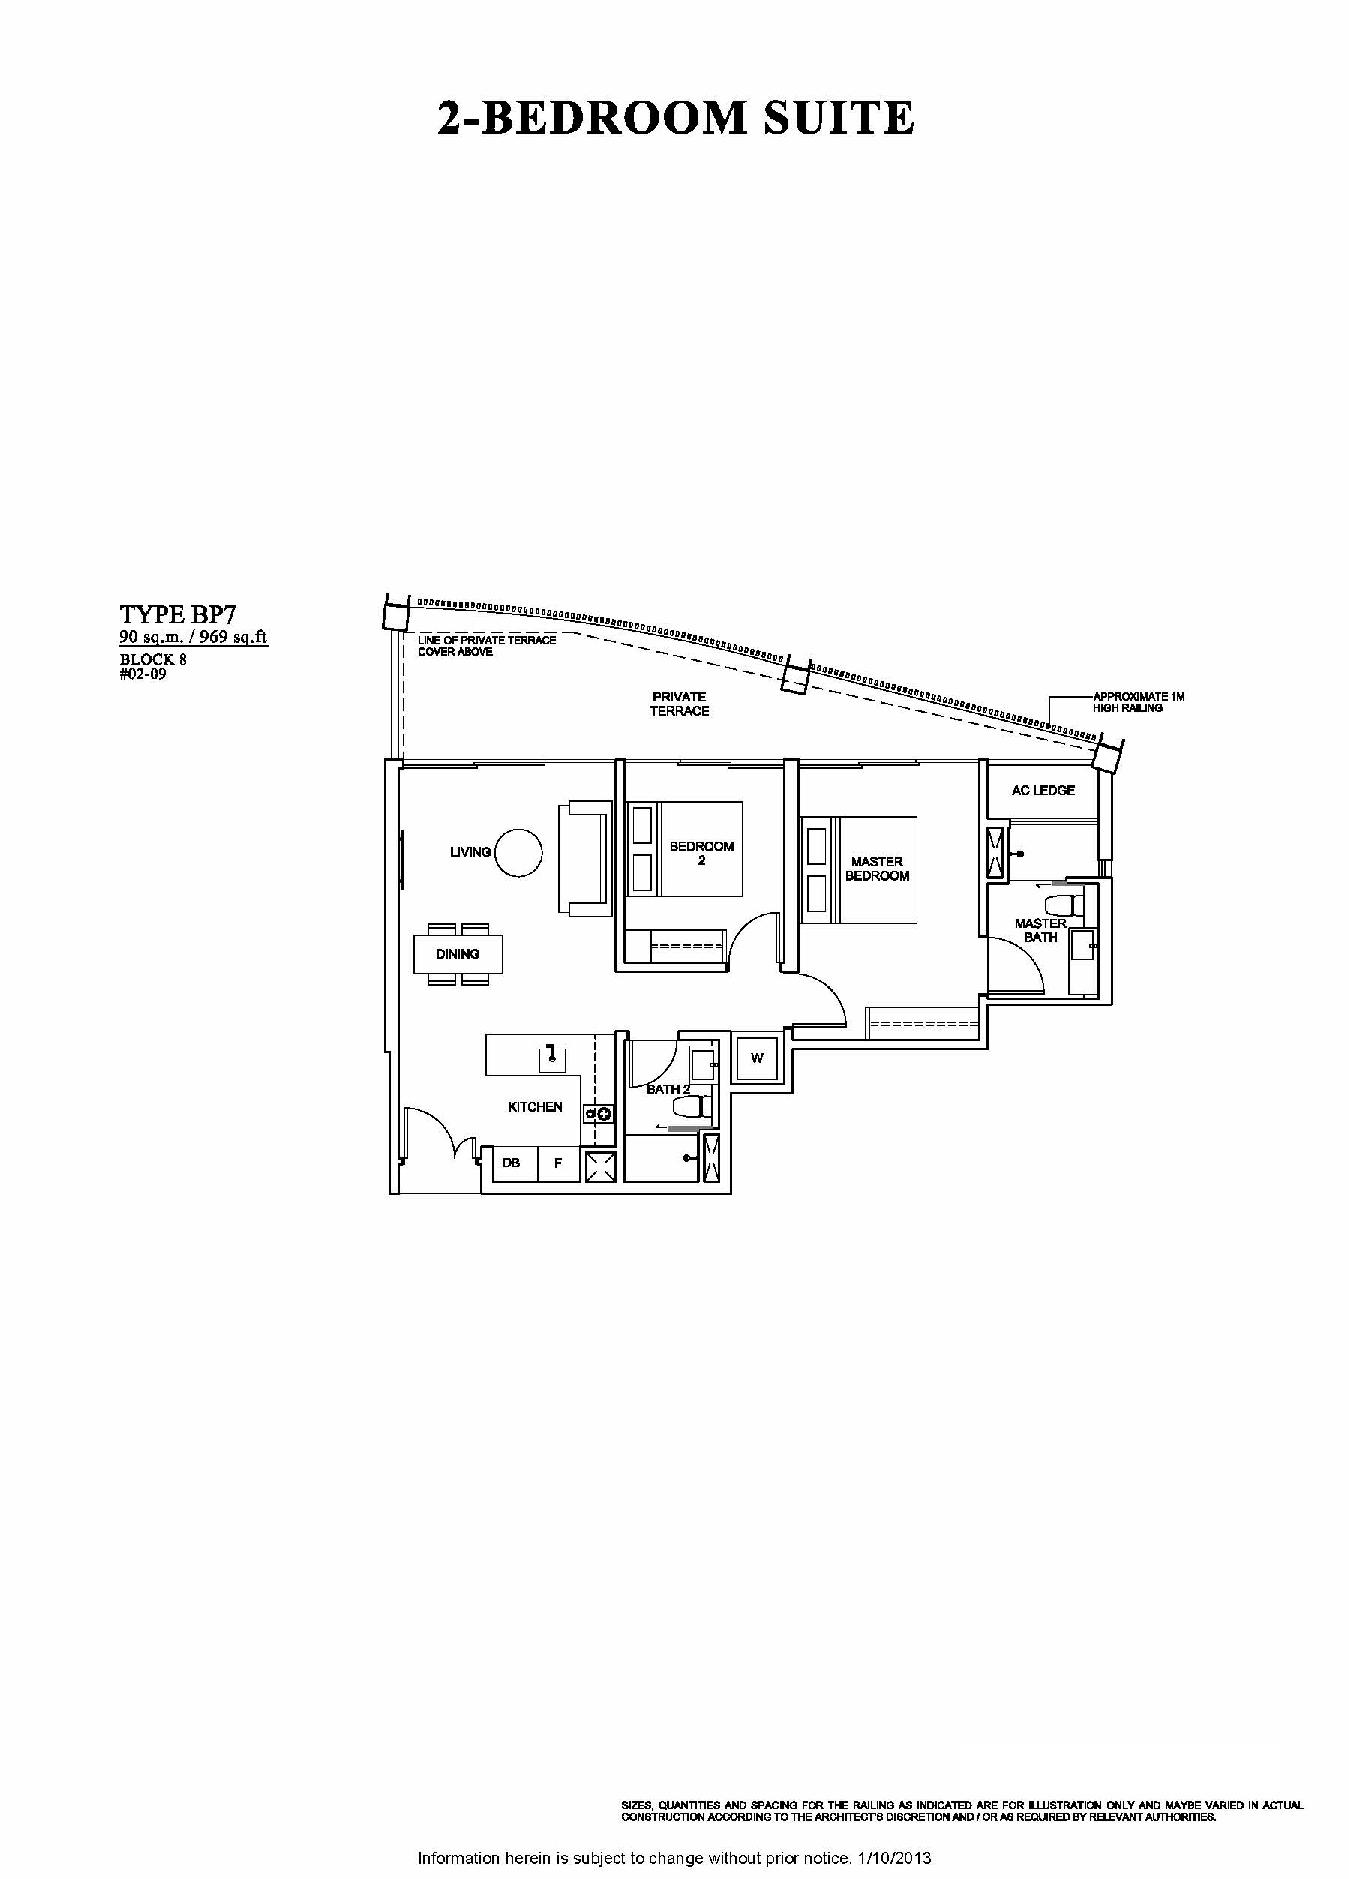 The Venue Residences 2 Bedroom Suite Floor Plan Type BP7